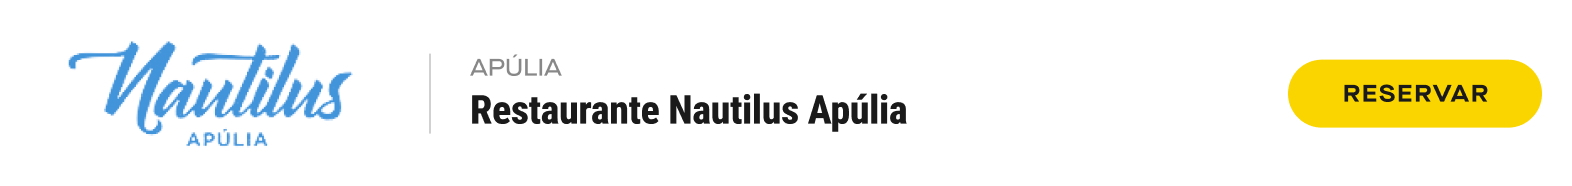 06.Desktop Nautilus Apulia Apulia